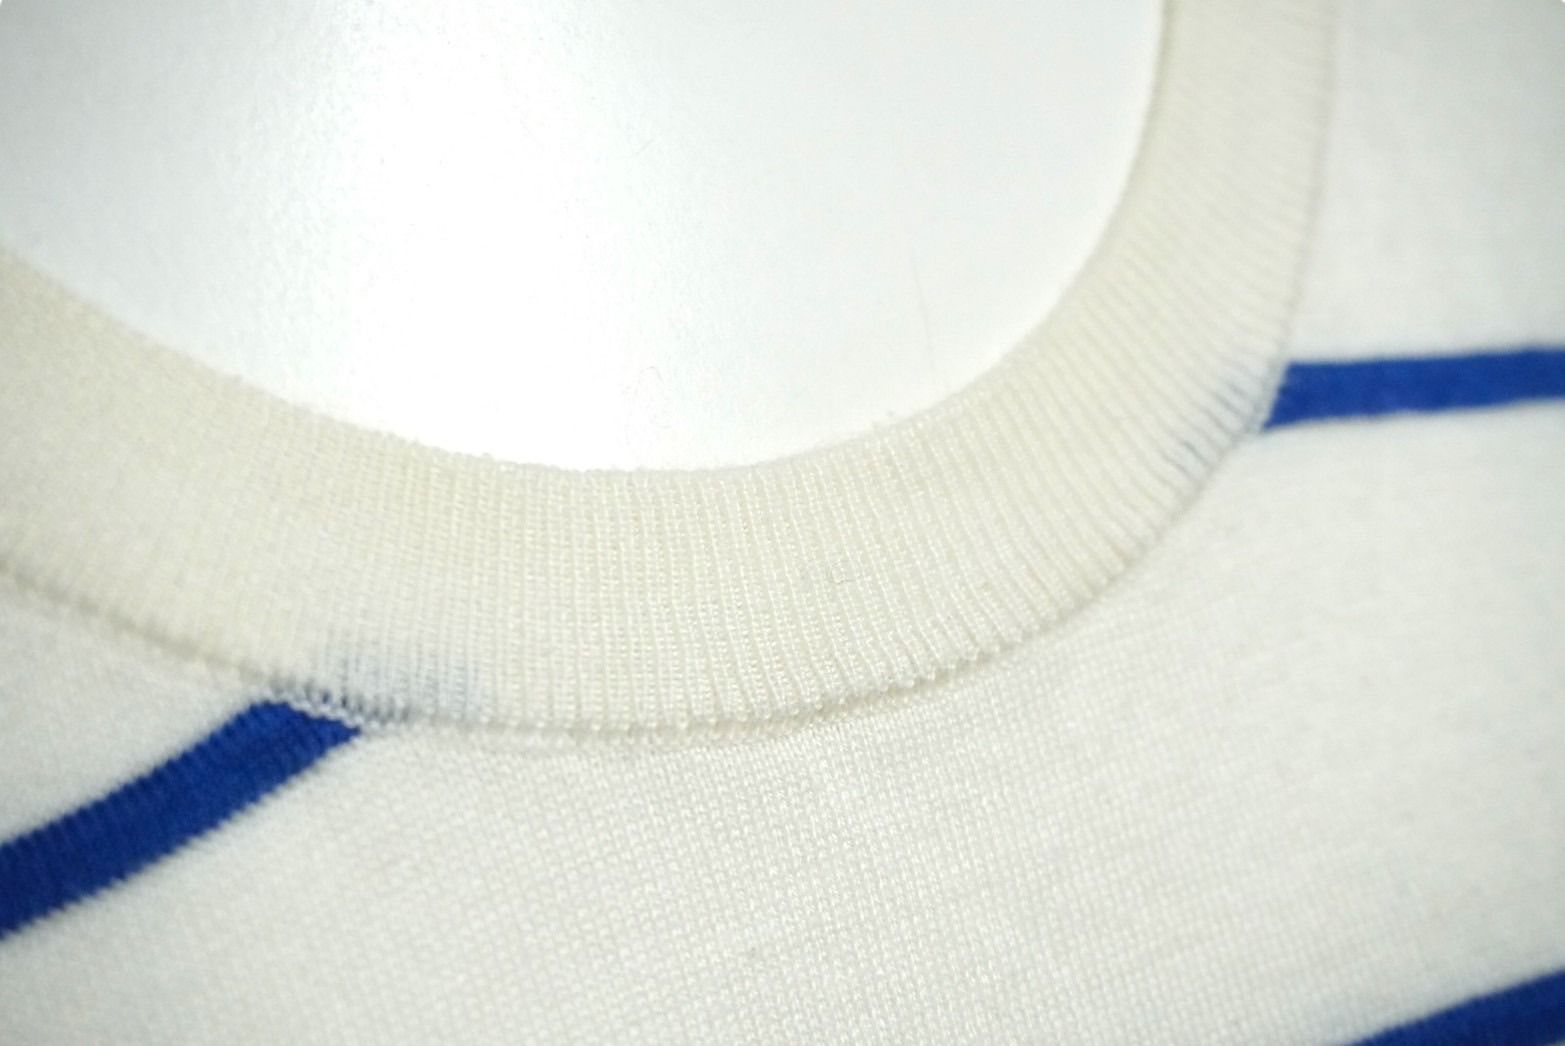 LOUIS VUITTON ルイヴィトン ニット セーター サイズL ブランドロゴ 刺繍 ボーダー ホワイト ブルー 良品 中古 61667